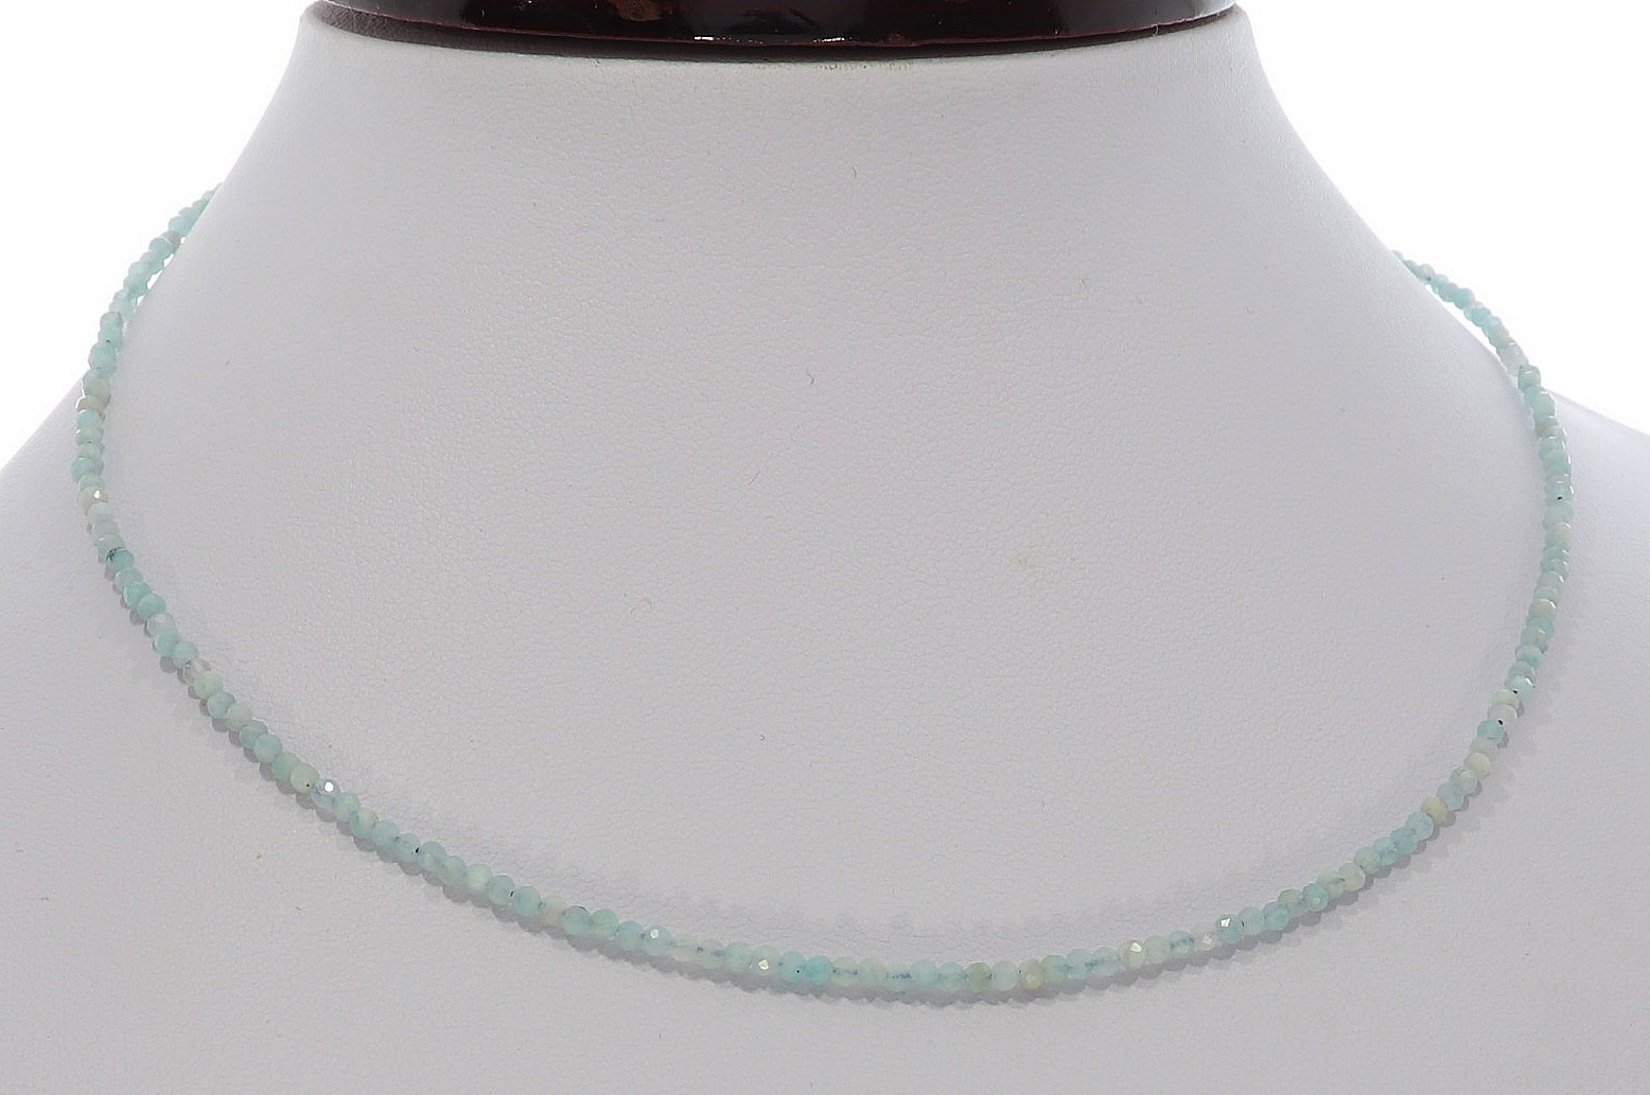 Aquamarin Kugel Halskette facettiert Silber farben 2mm - 40-45cm Kettenverlängerer KK324